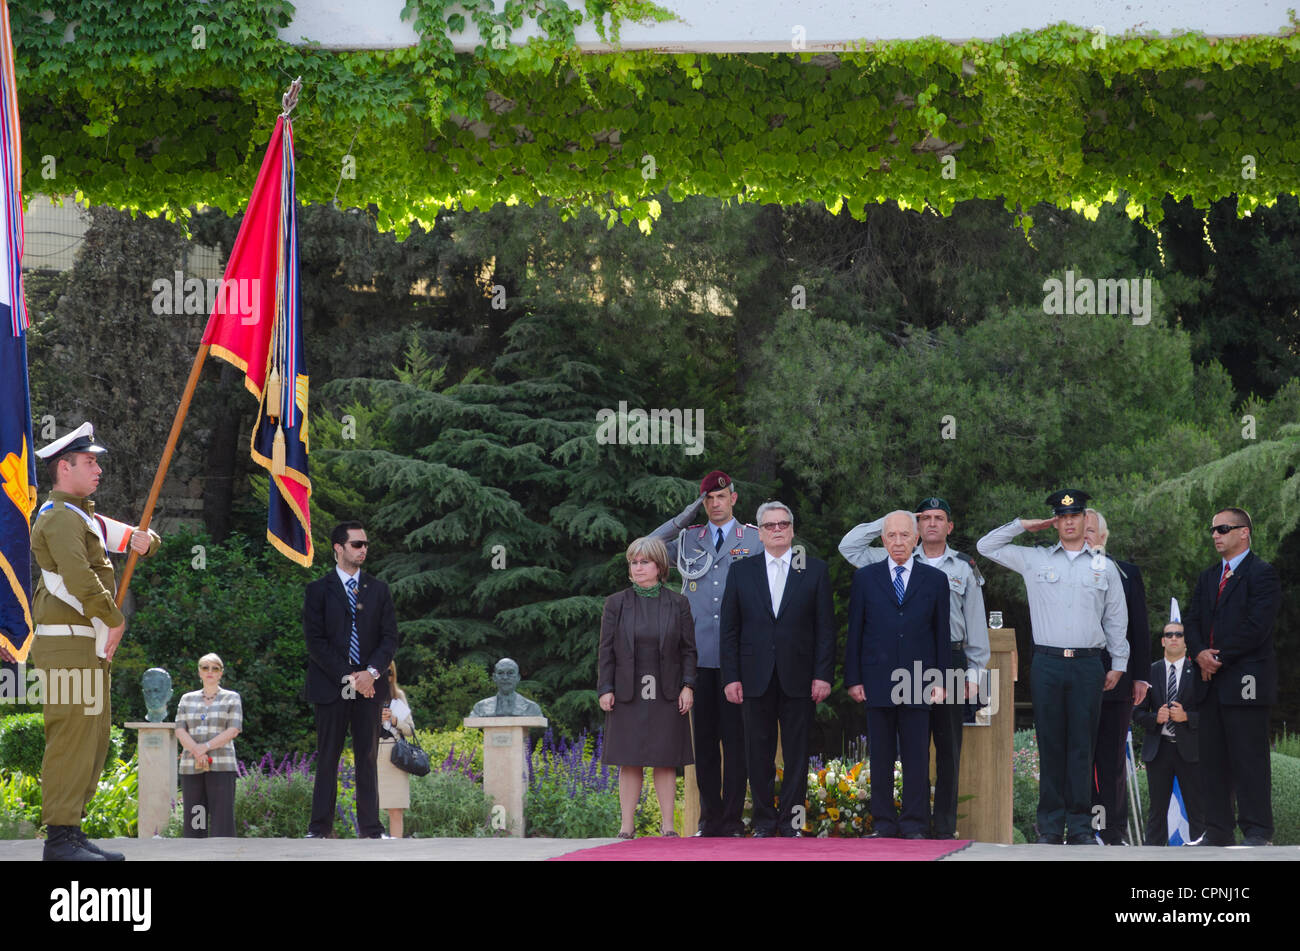 El Presidente de Israel, Shimon Peres, y su homólogo alemán Joachim Gauck revisar una guardia de honor militar durante una ceremonia bienvenidos Foto de stock